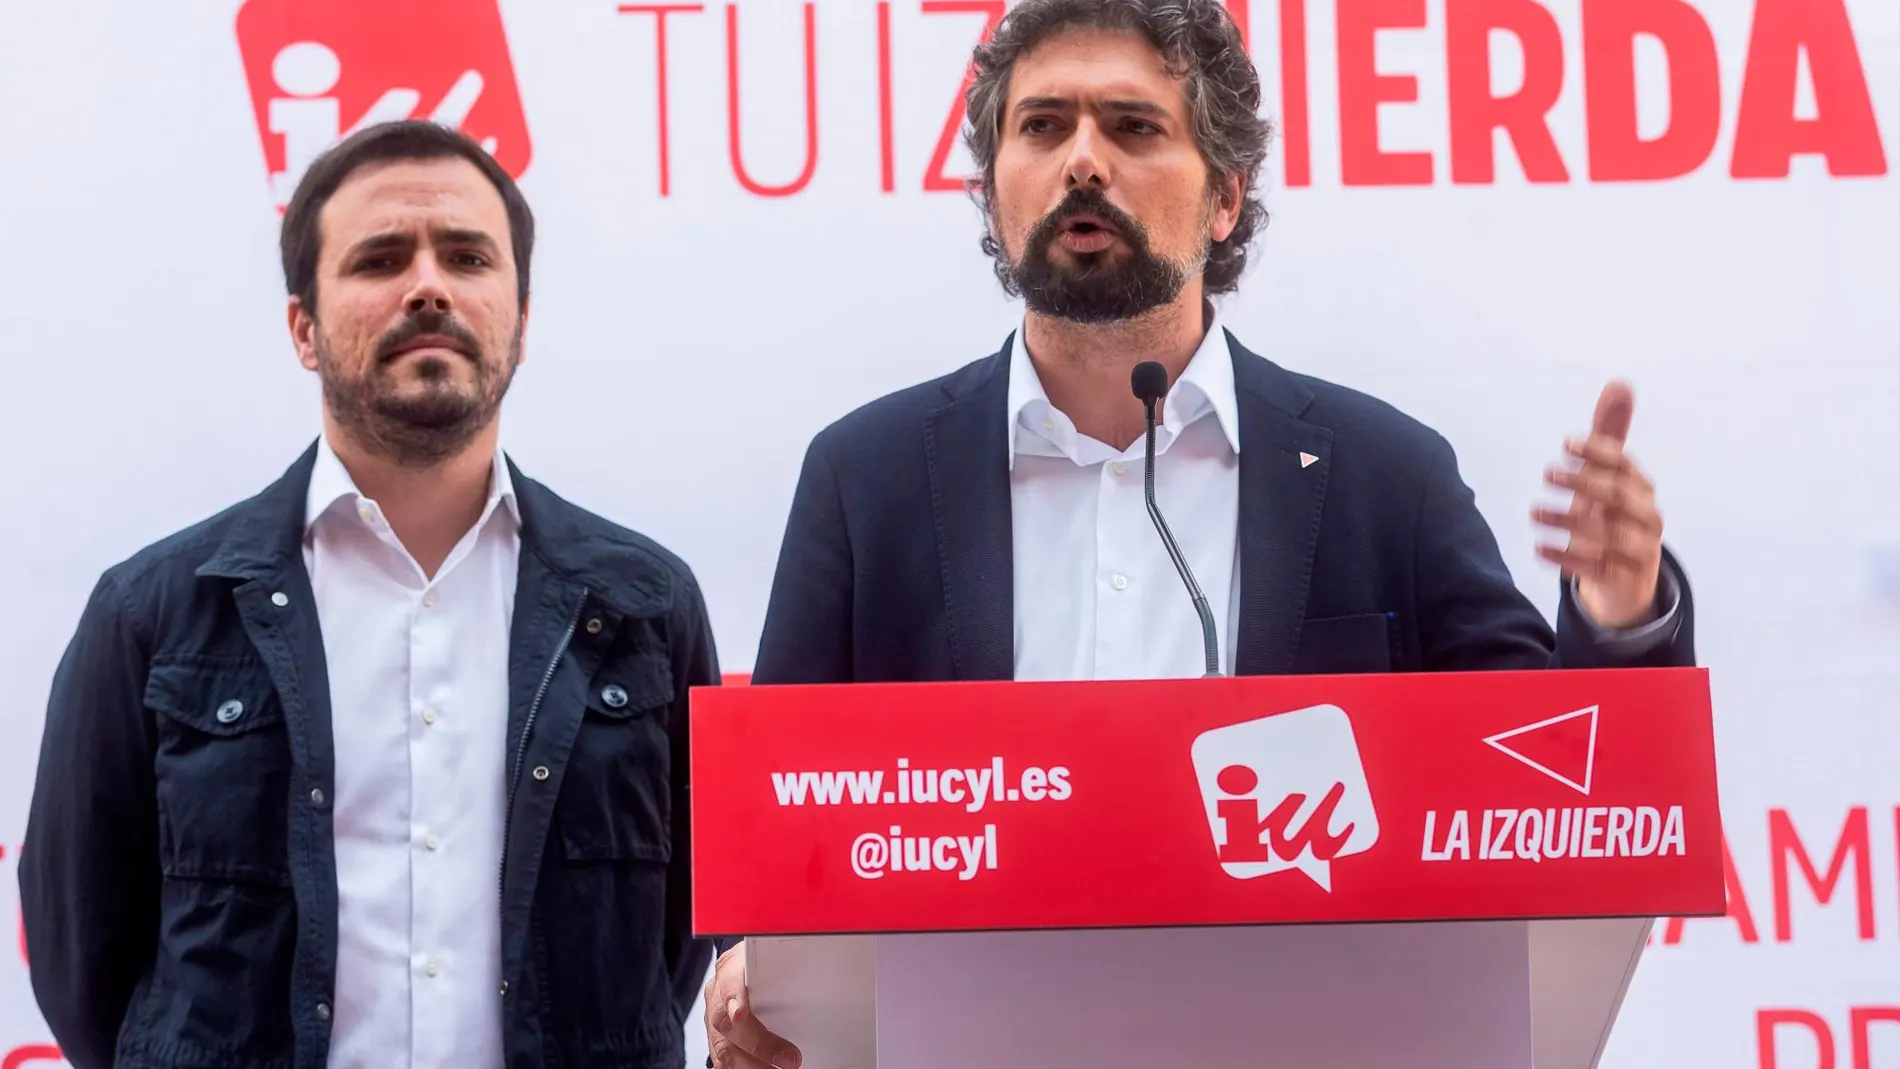 El candidato de IU Castilla y León en Marcha, José Sarrión, contesta a las preguntas de la prensa en presencia de Alberto Garzón